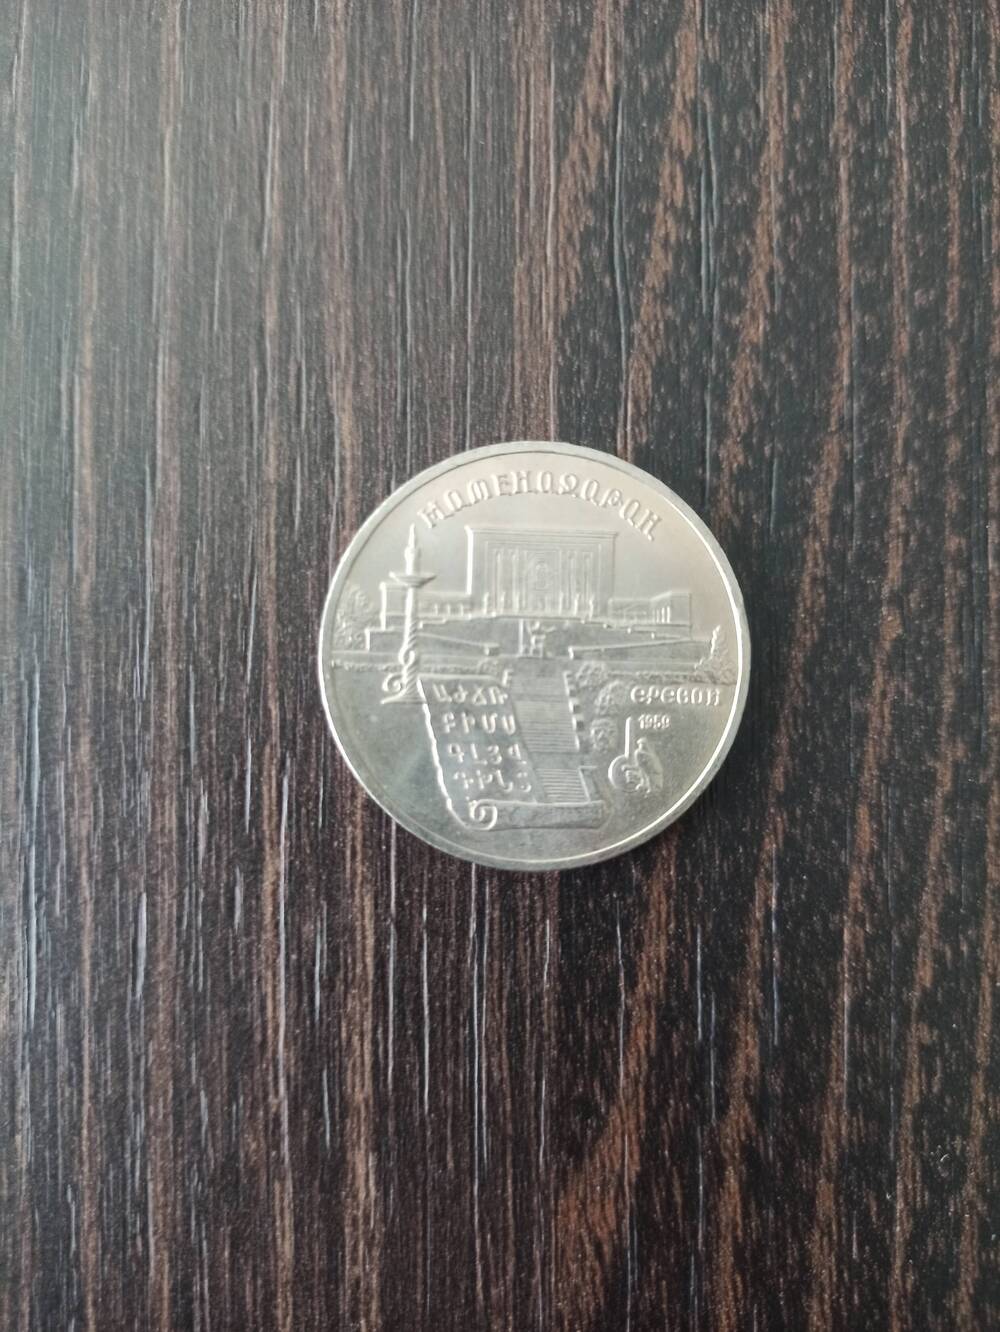 Нумизматика. Монета СССР достоинством 5 рублей 1990г. Сверху надпись «Матенадаран», справа надпись «Ереван 1959»